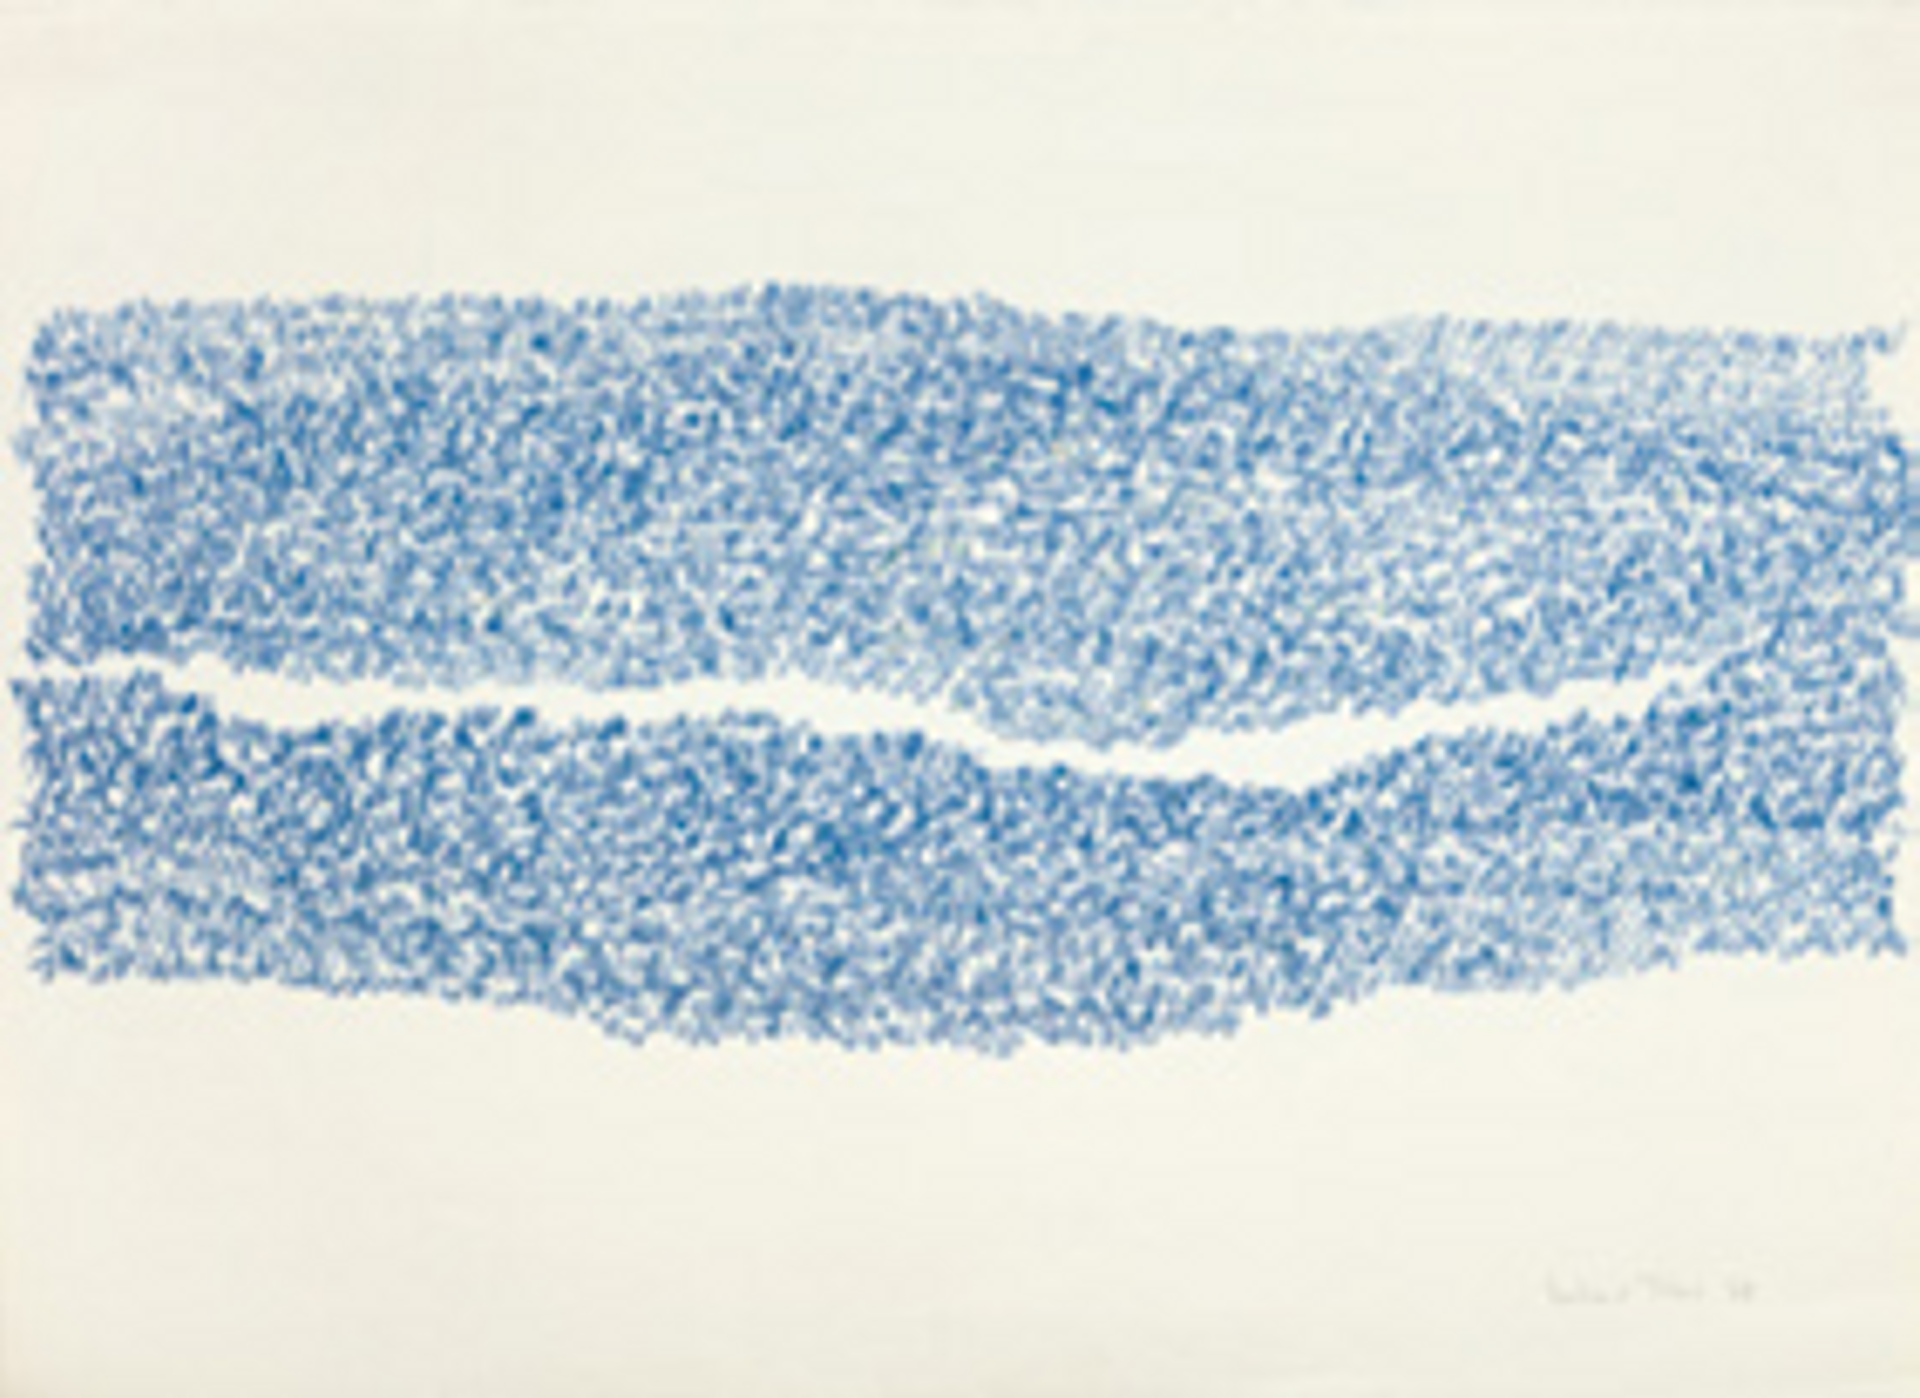 Irma Blank, Eigenschriften, Senza titolo, 1968, pastel sur papier. Courtesy de l’artiste et P420, Bologne. Photo C. Favero.